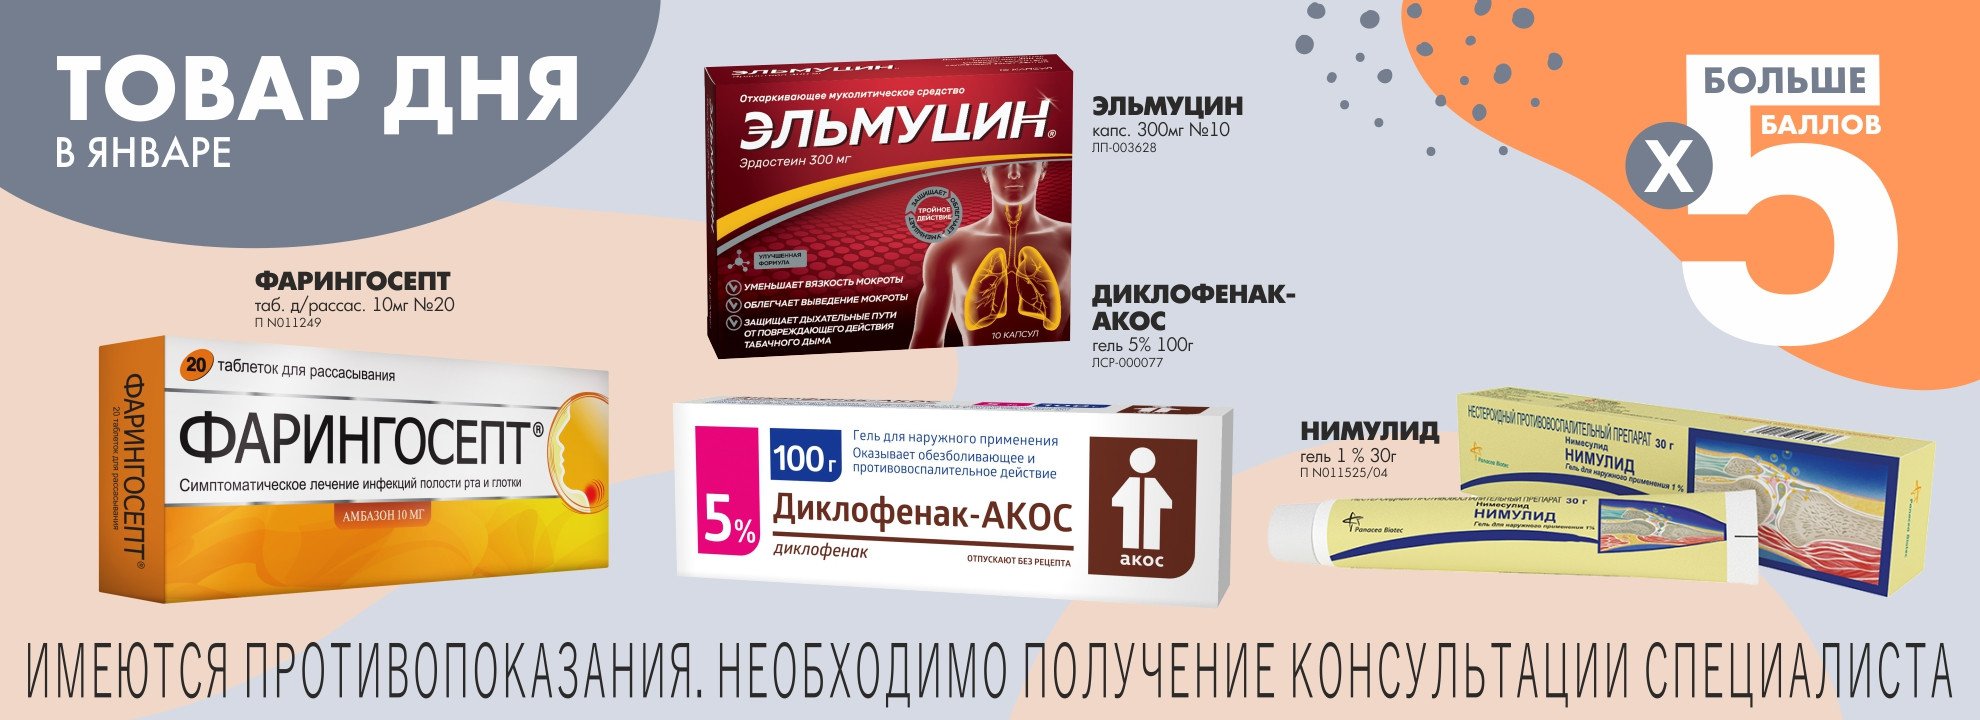 Заказать Лекарства На Apteka Ru В Барнауле